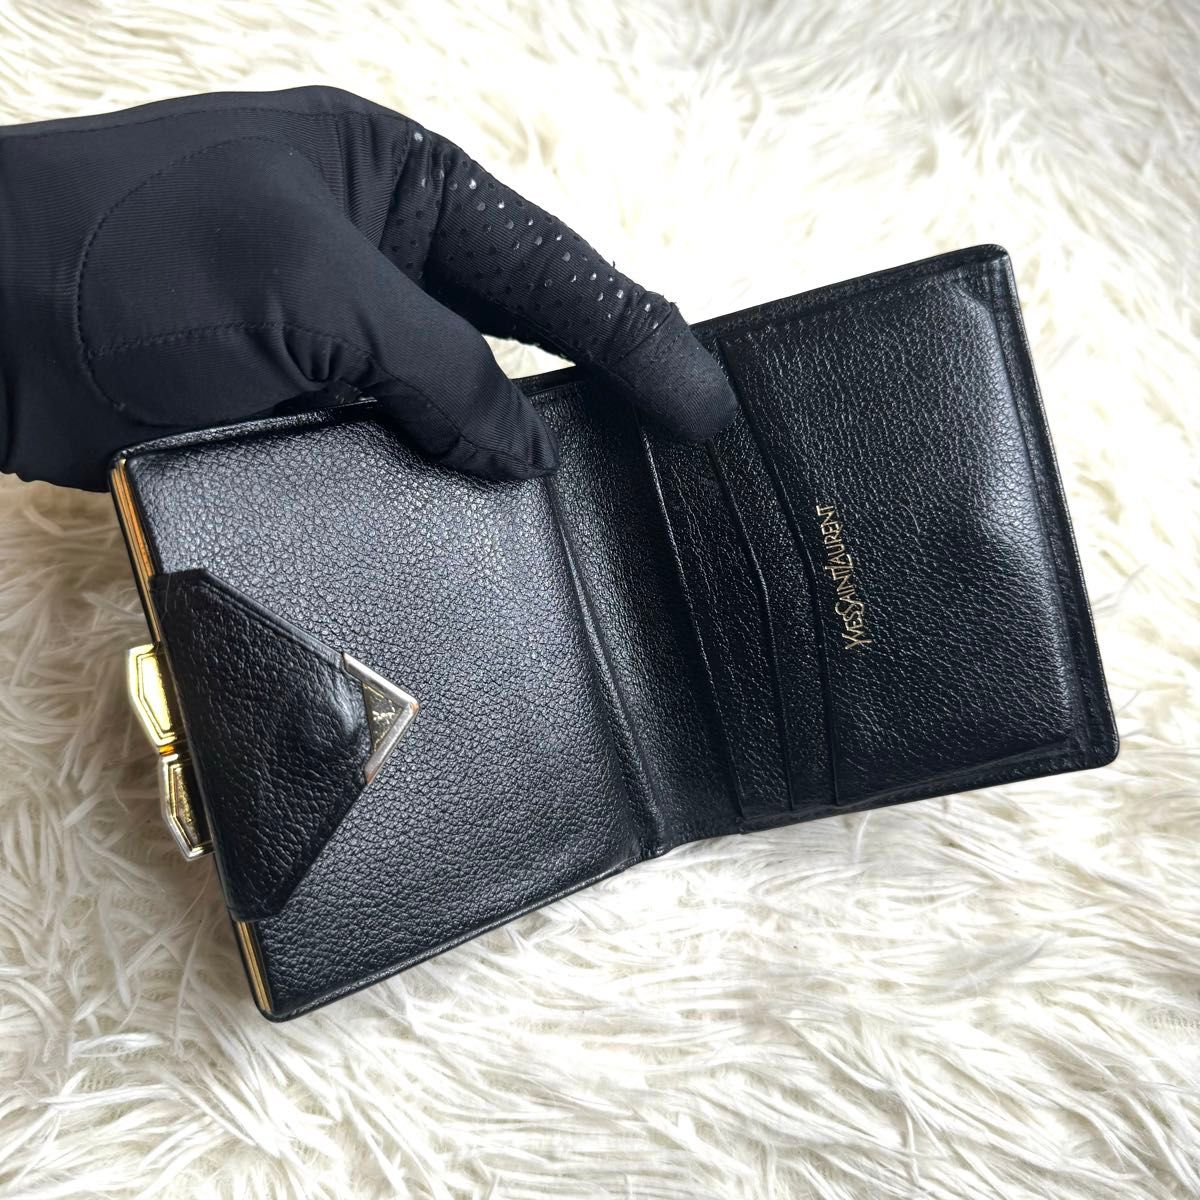 YSL イヴサンローラン がま口コンパクトウォレット 二つ折り財布 がま口財布 レザー ブラック ゴールド ヴィンテージ